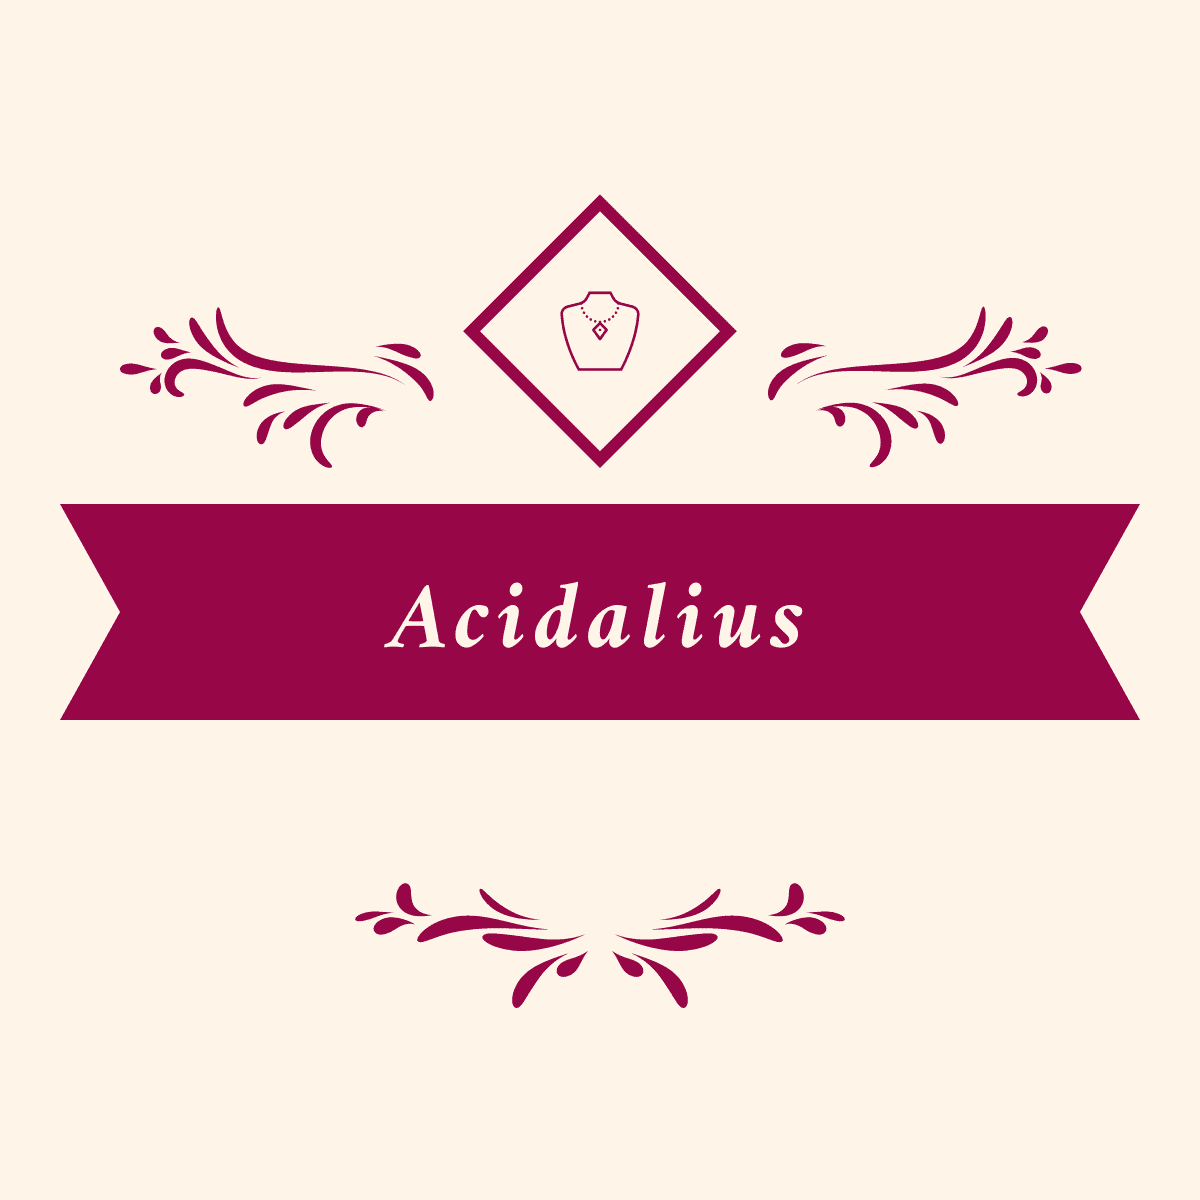 Acidalius